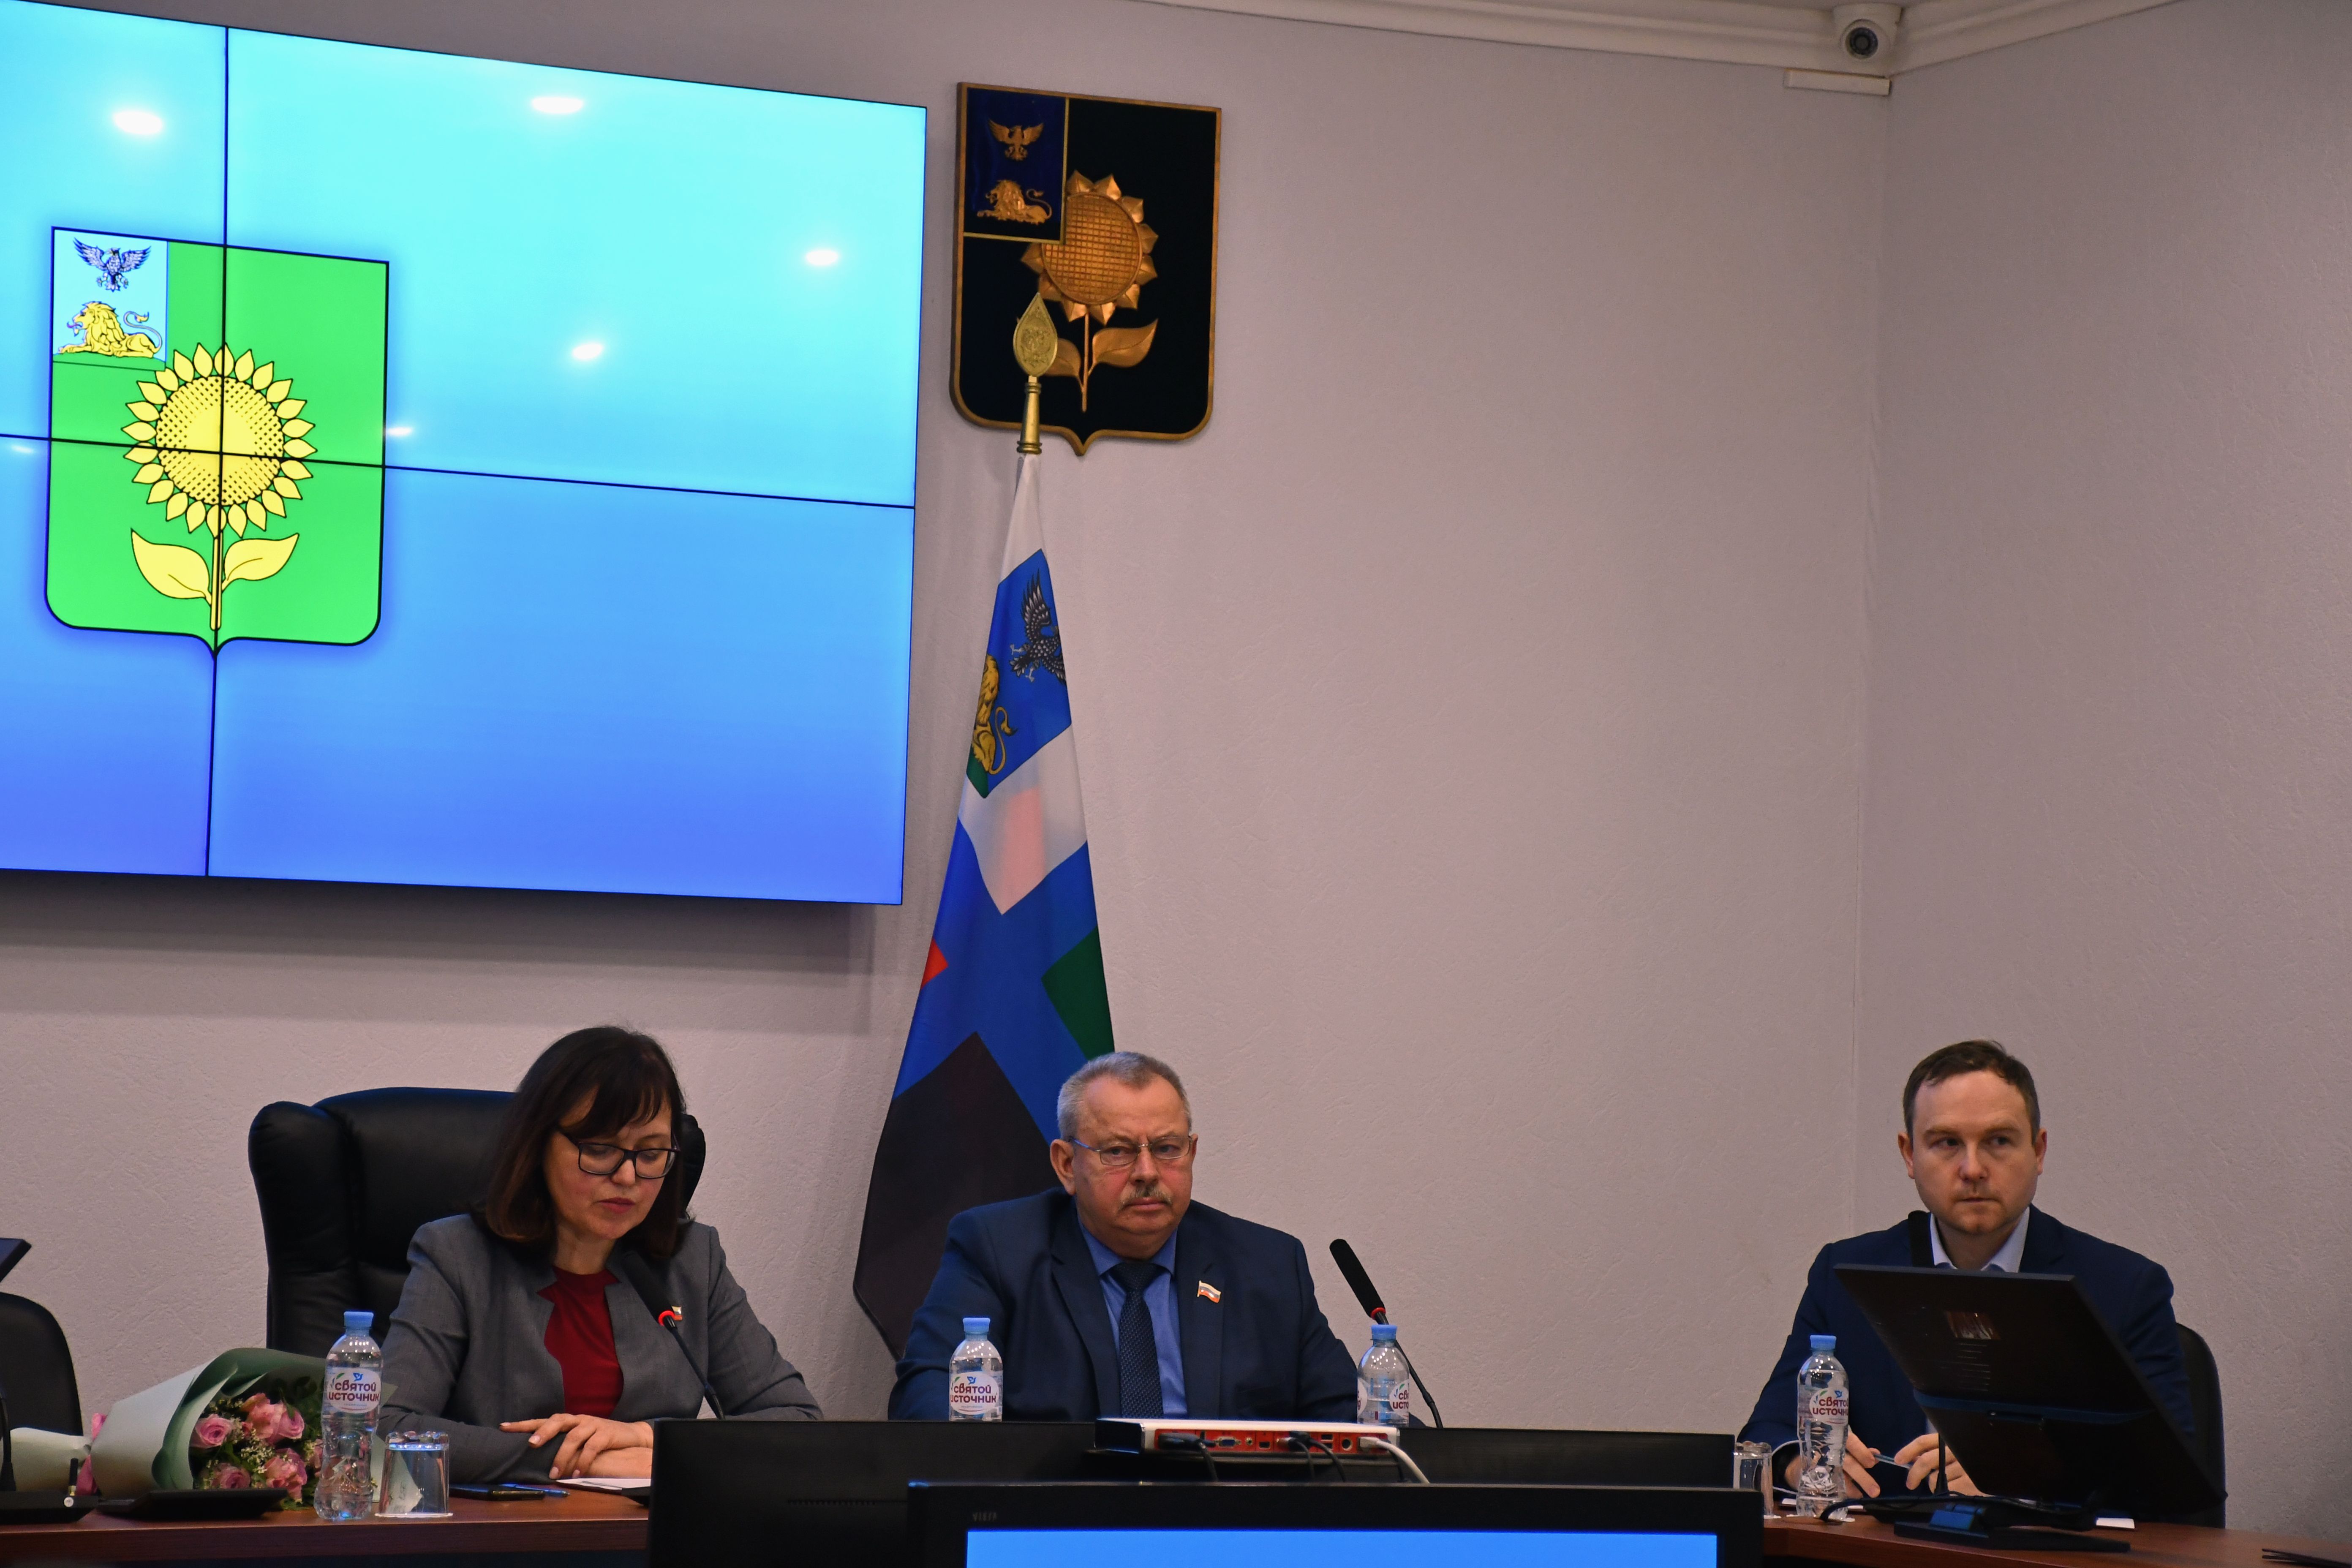 Сегодня, 31 января состоялось пятидесятое внеочередное заседание Совета депутатов